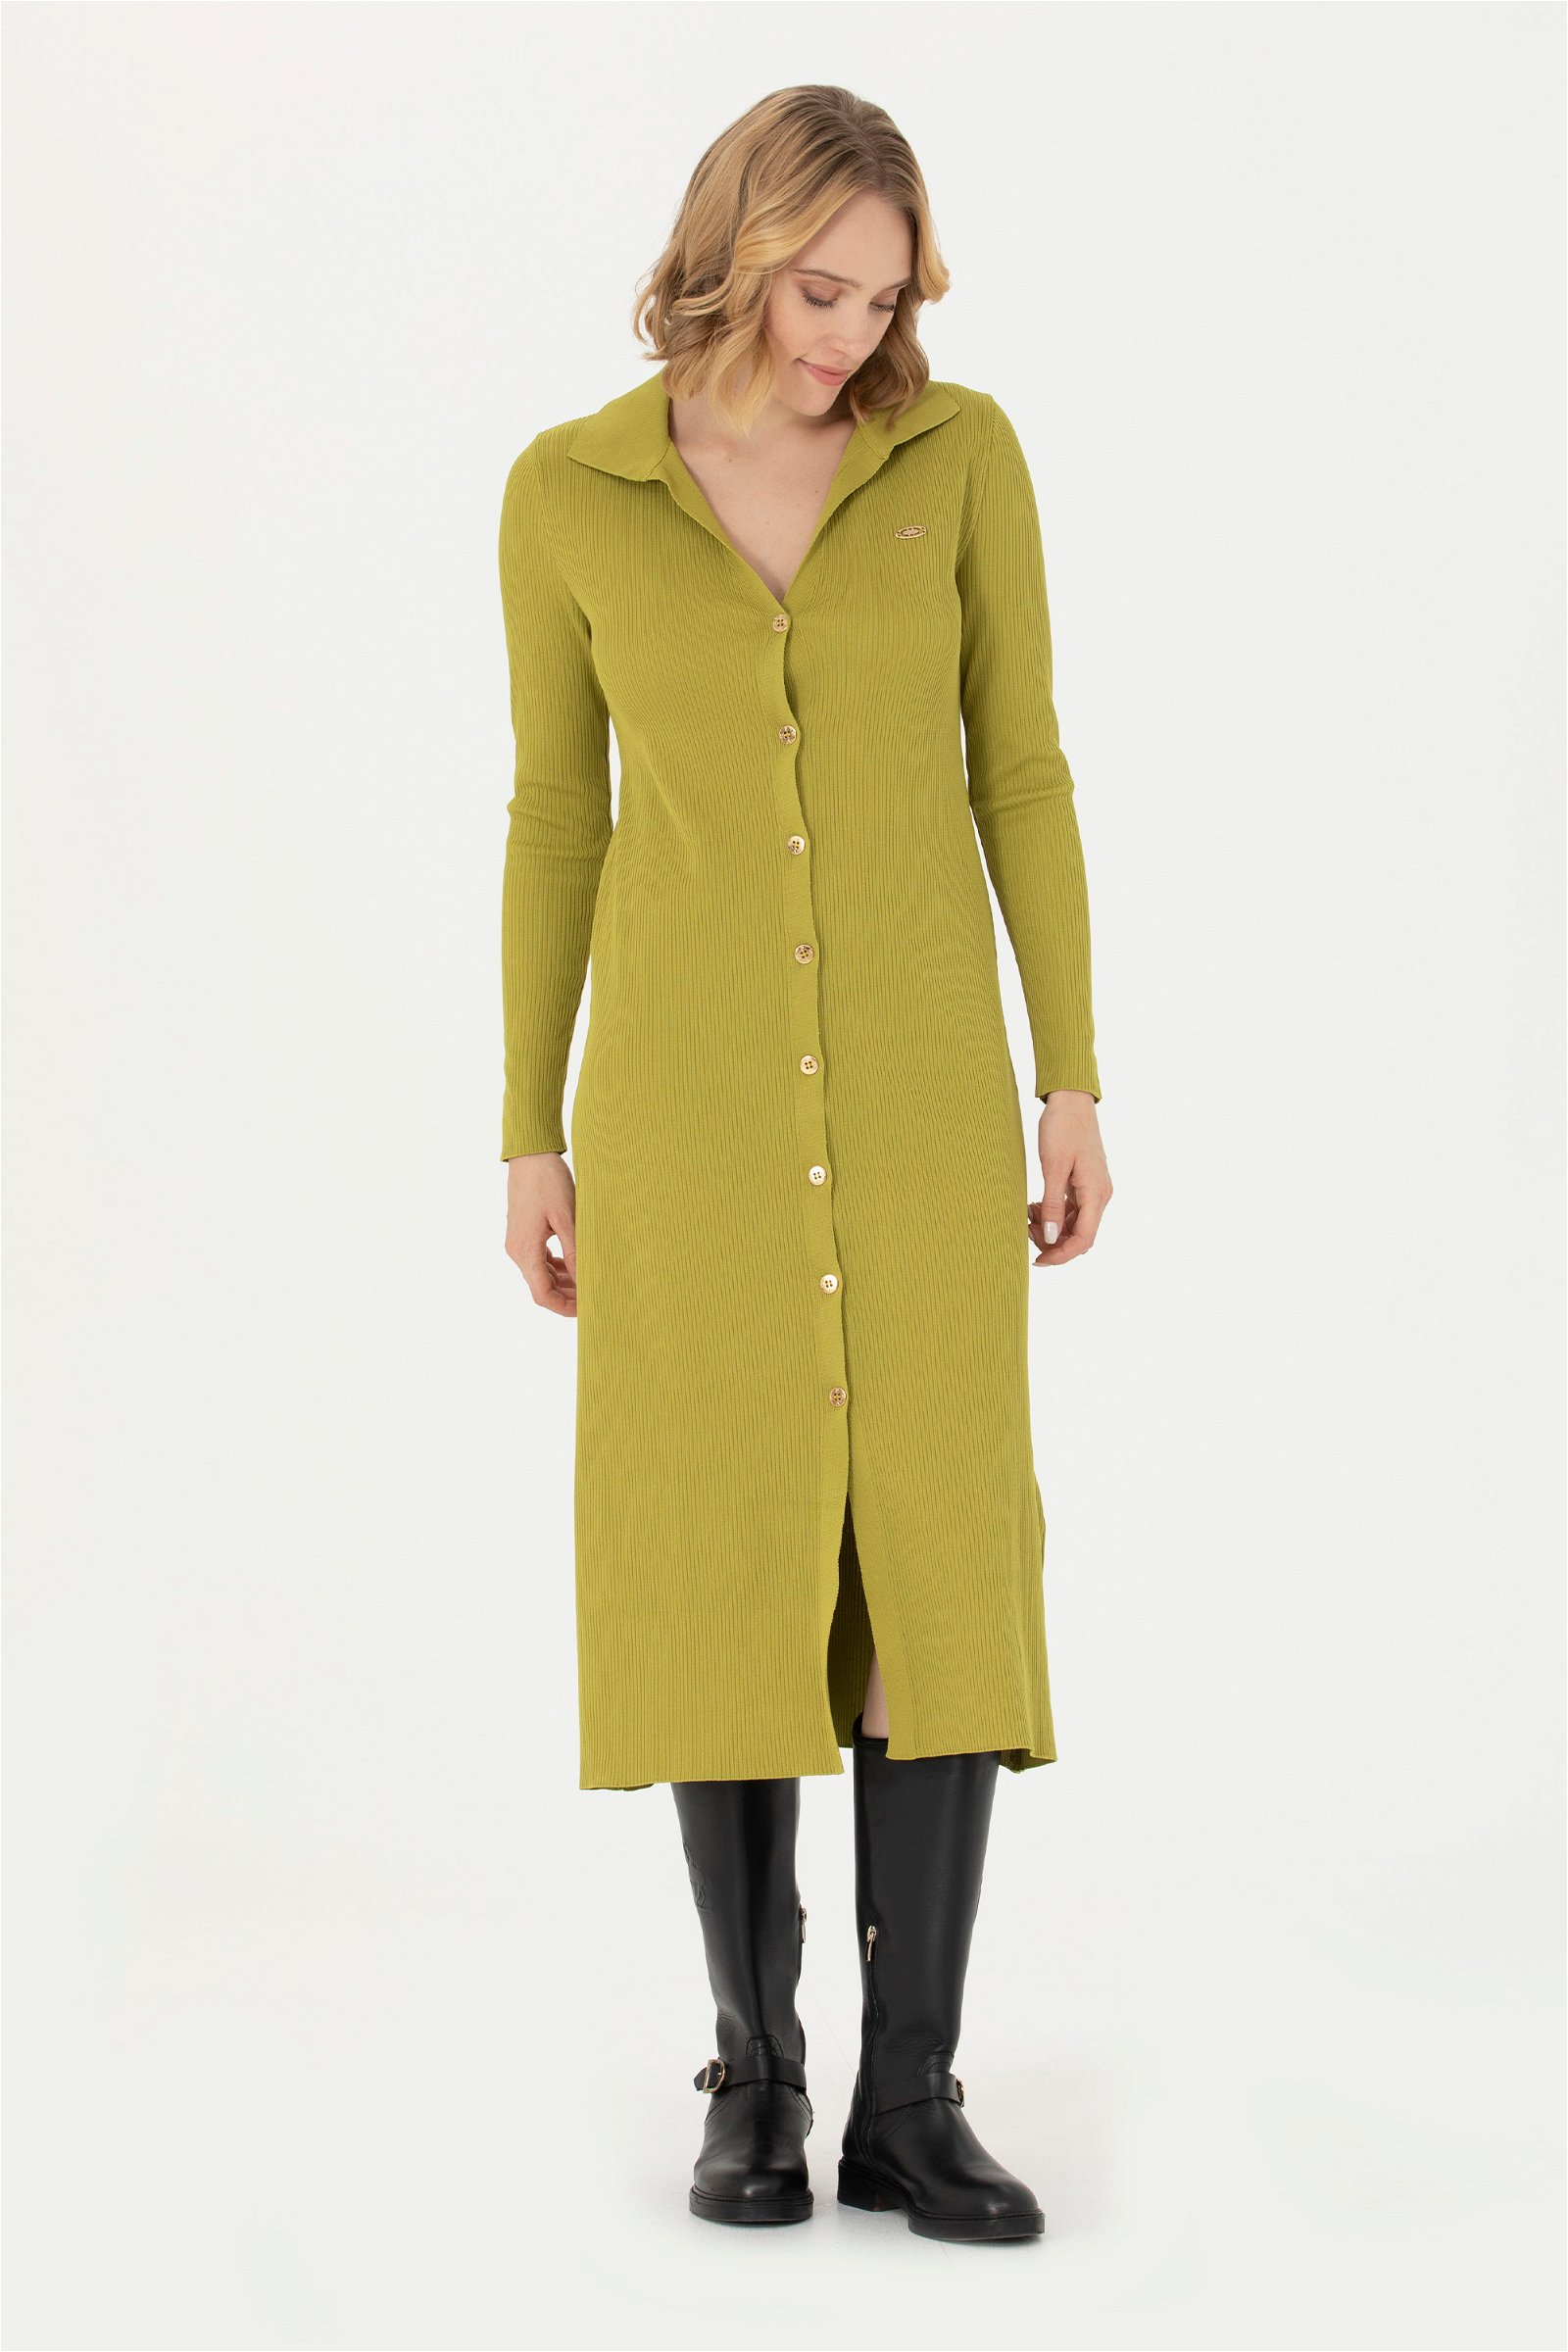 لباس تریکو یقه هفت سبز پسته ای  A-Form Fit آستین بلند زنانه یو اس پولو | US POLO ASSN